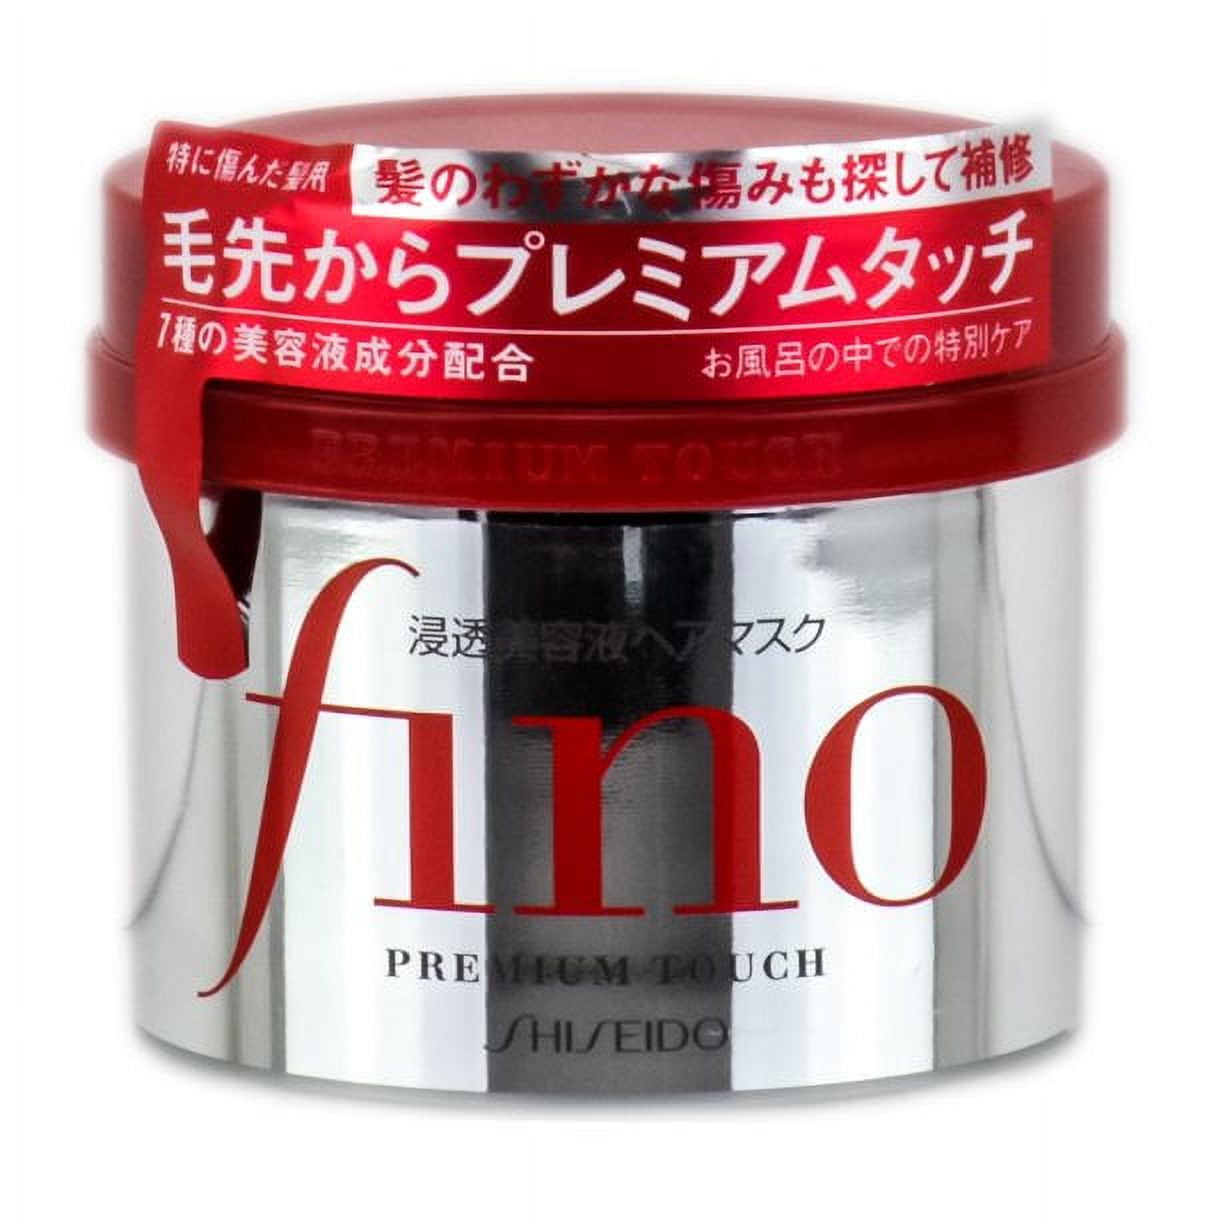 Shisedio Fino Premium Touch Hair Mask (Size : 8.1 oz) 